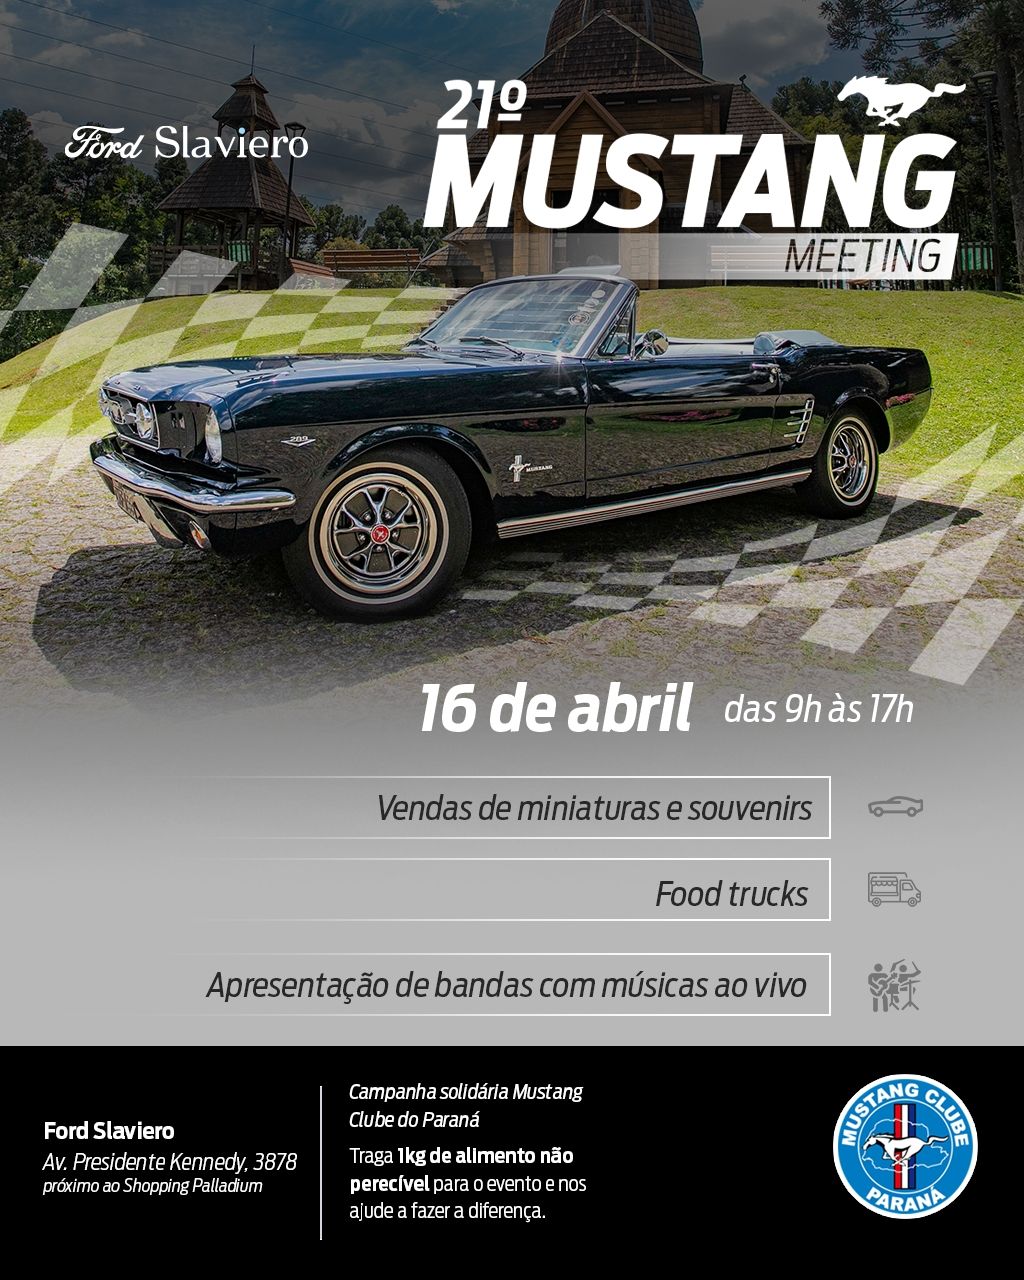 Mustang Meeting: evento com exposição de 60 carros realiza campanha solidária